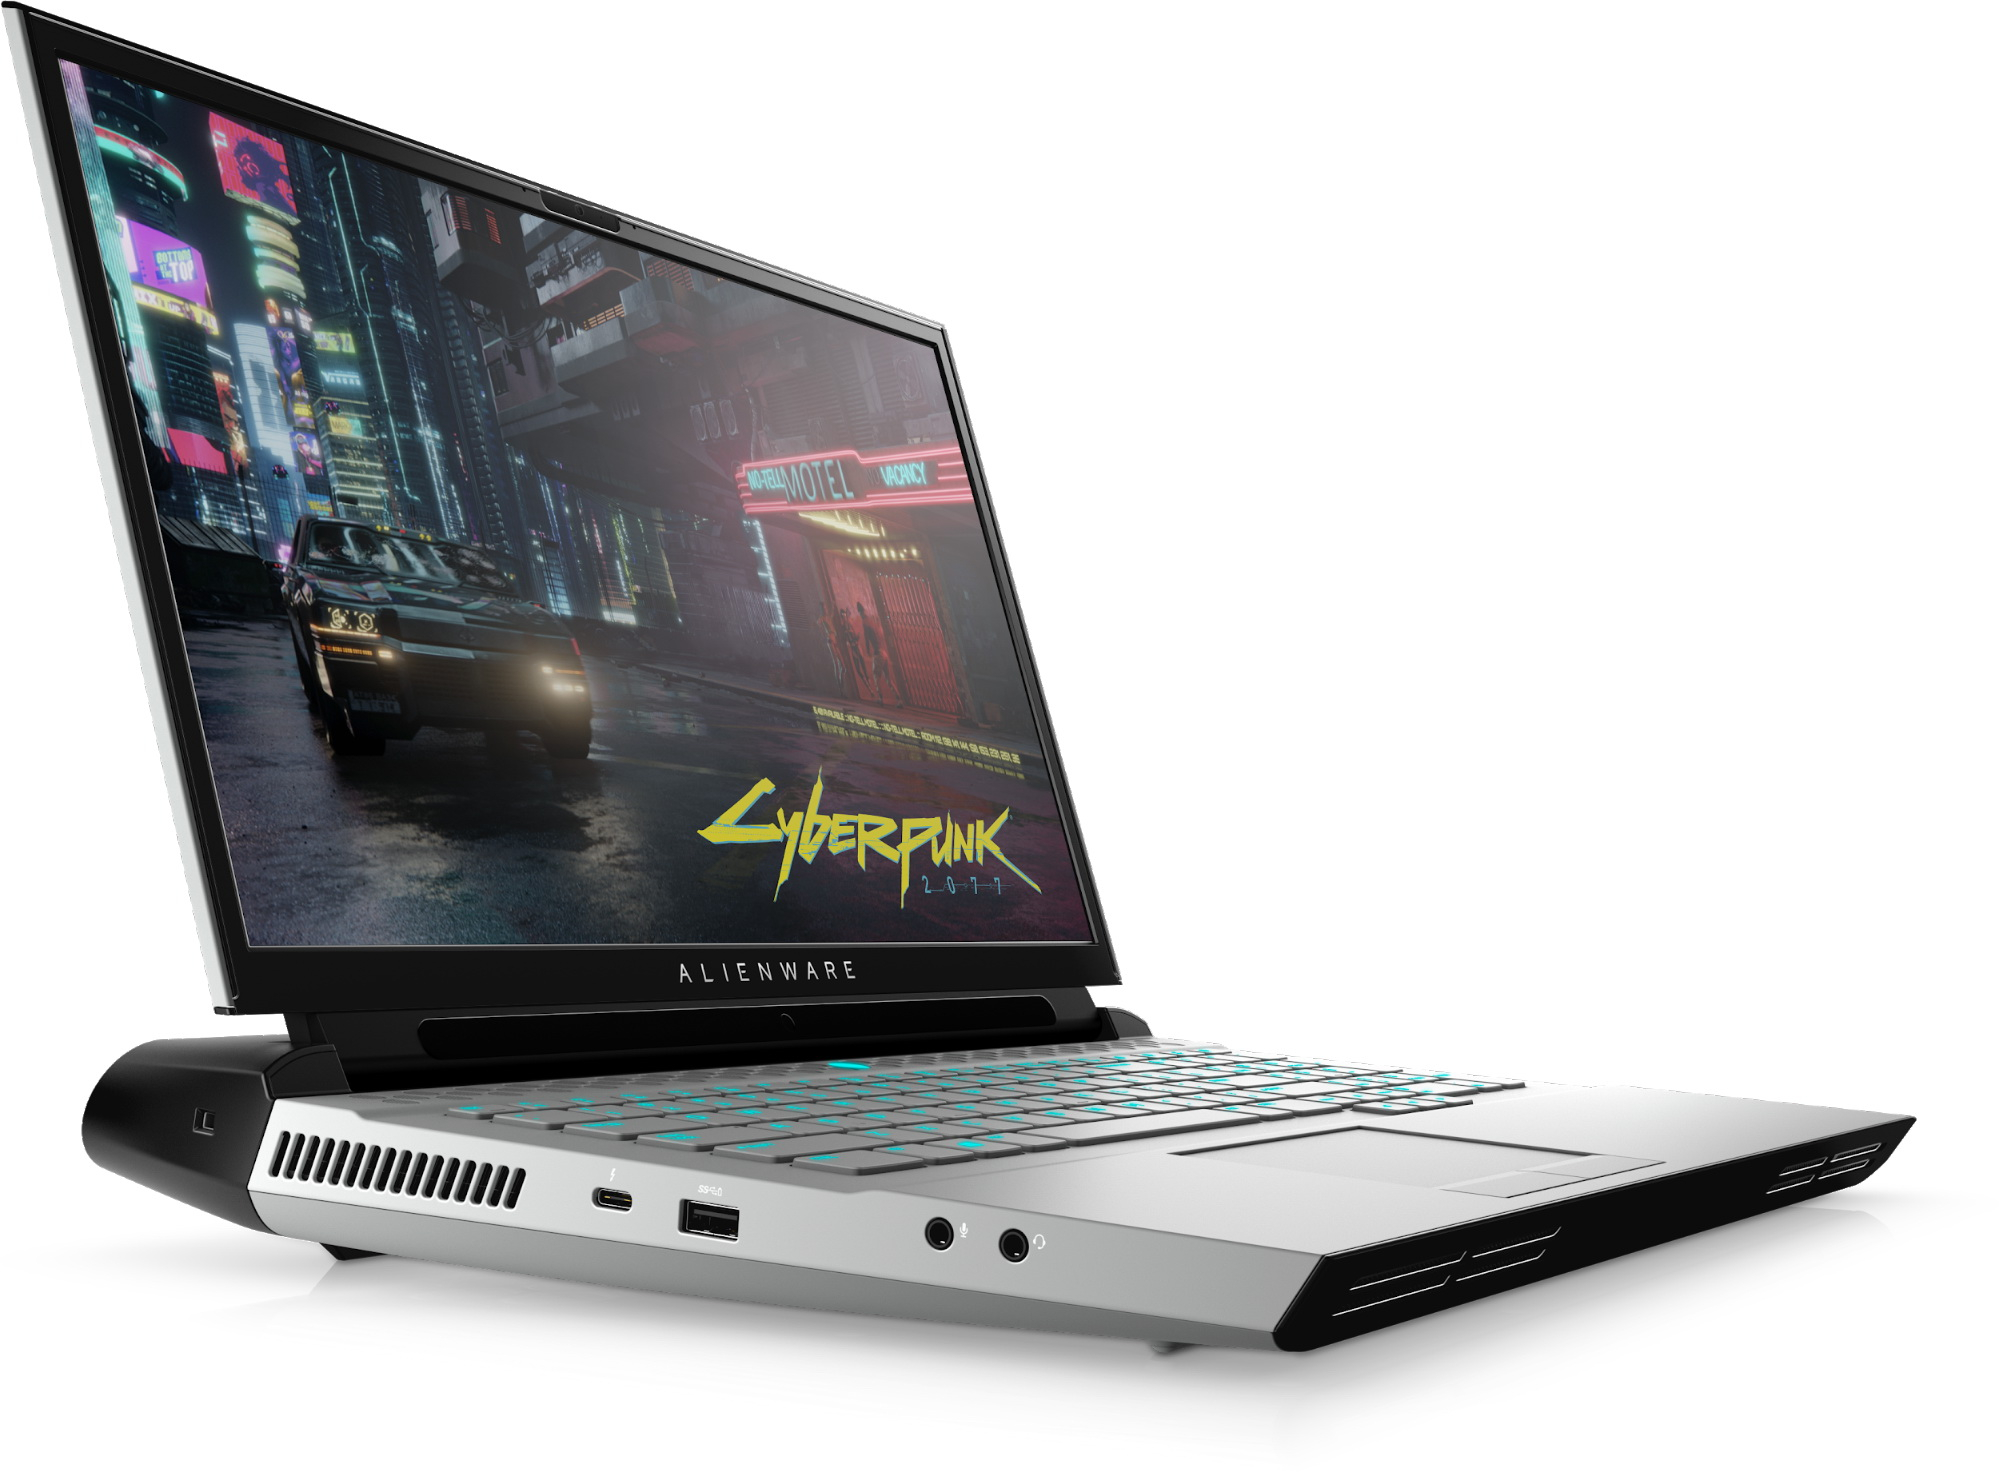 Купить Игровой Ноутбук Dell Alienware 17 R2